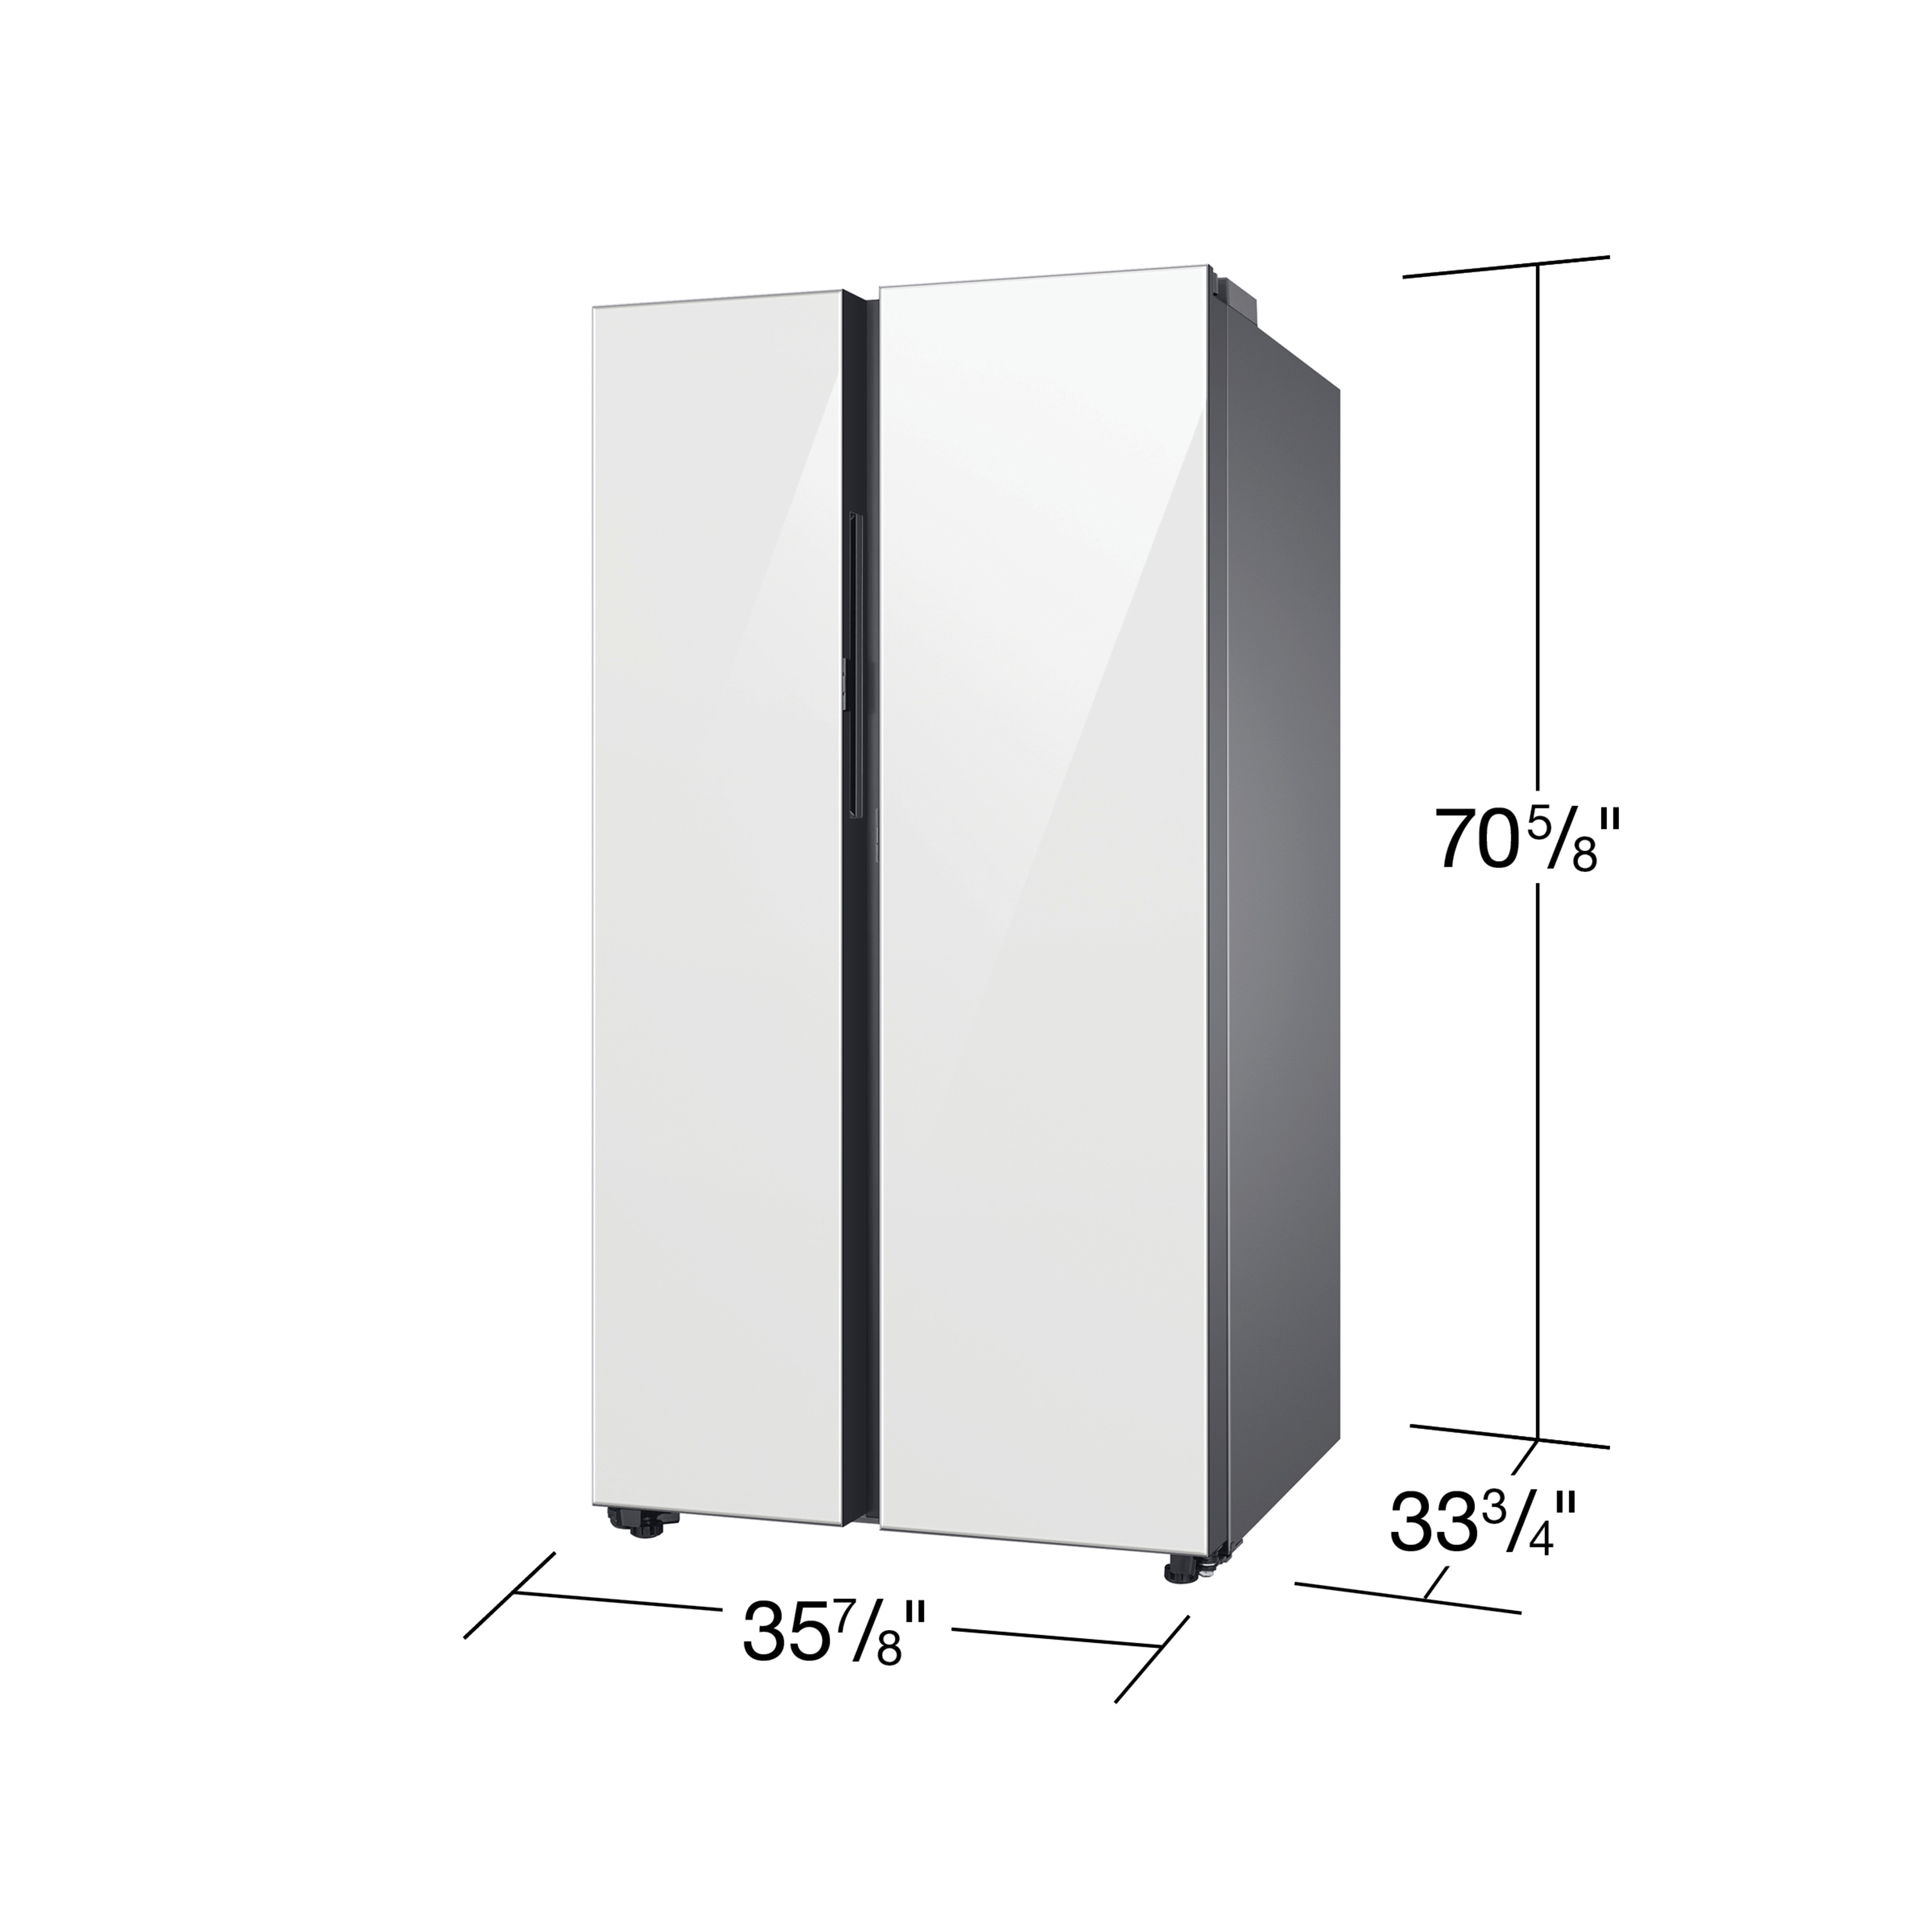 Réfrigérateur Samsung avec tiroir FlexZone et distributeur d'eau extérieur,  24,7 pi³, 33 po, inox RF25HMIDBSR/AA